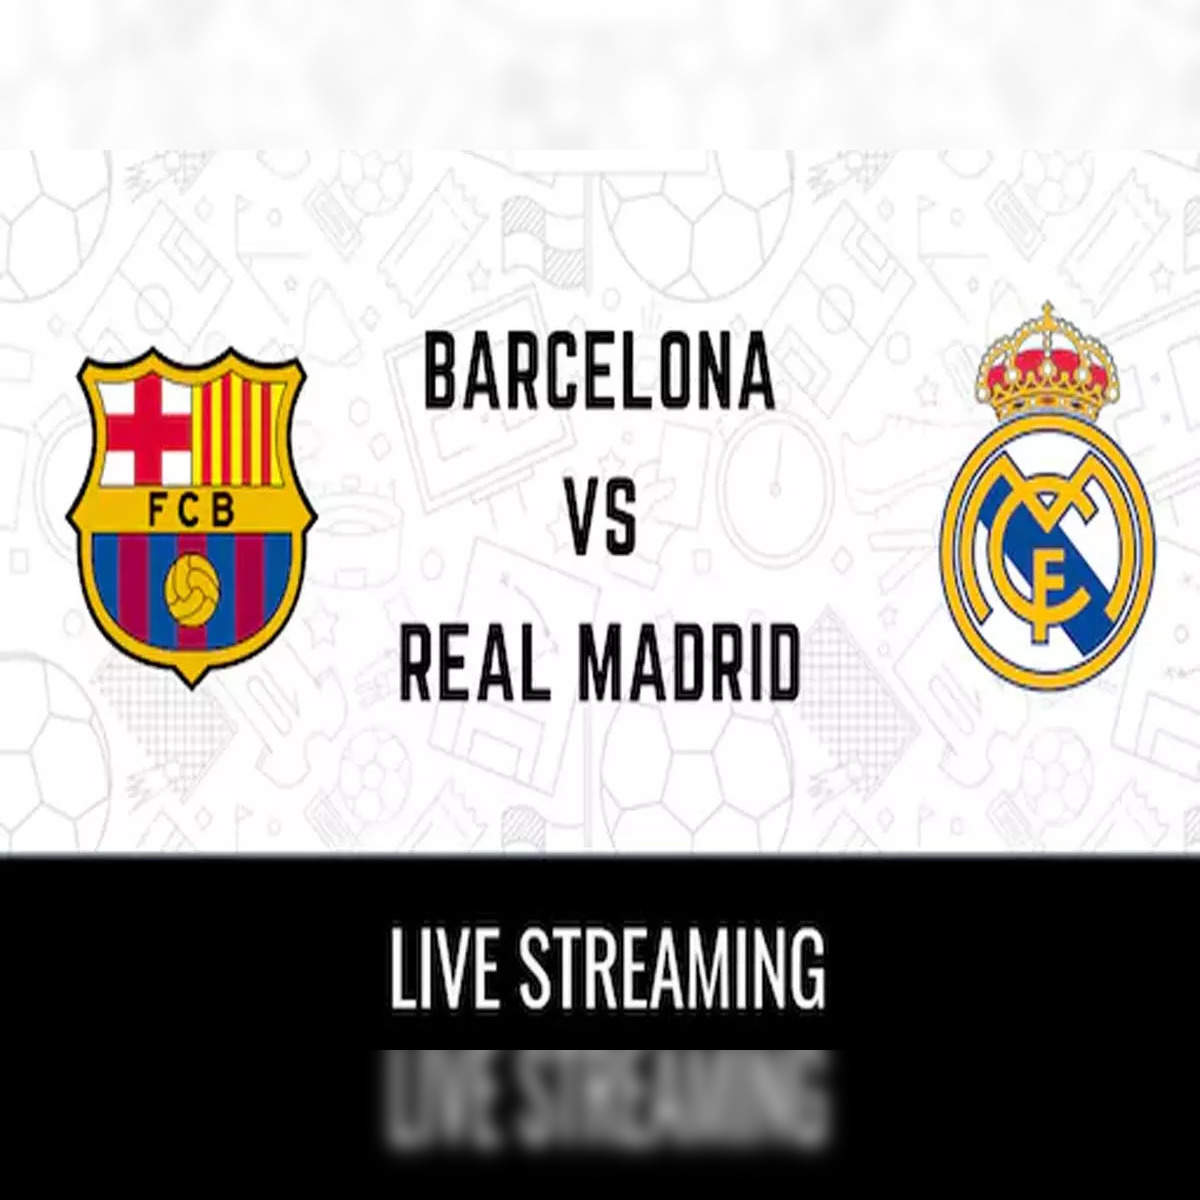 Copa del rey live stream